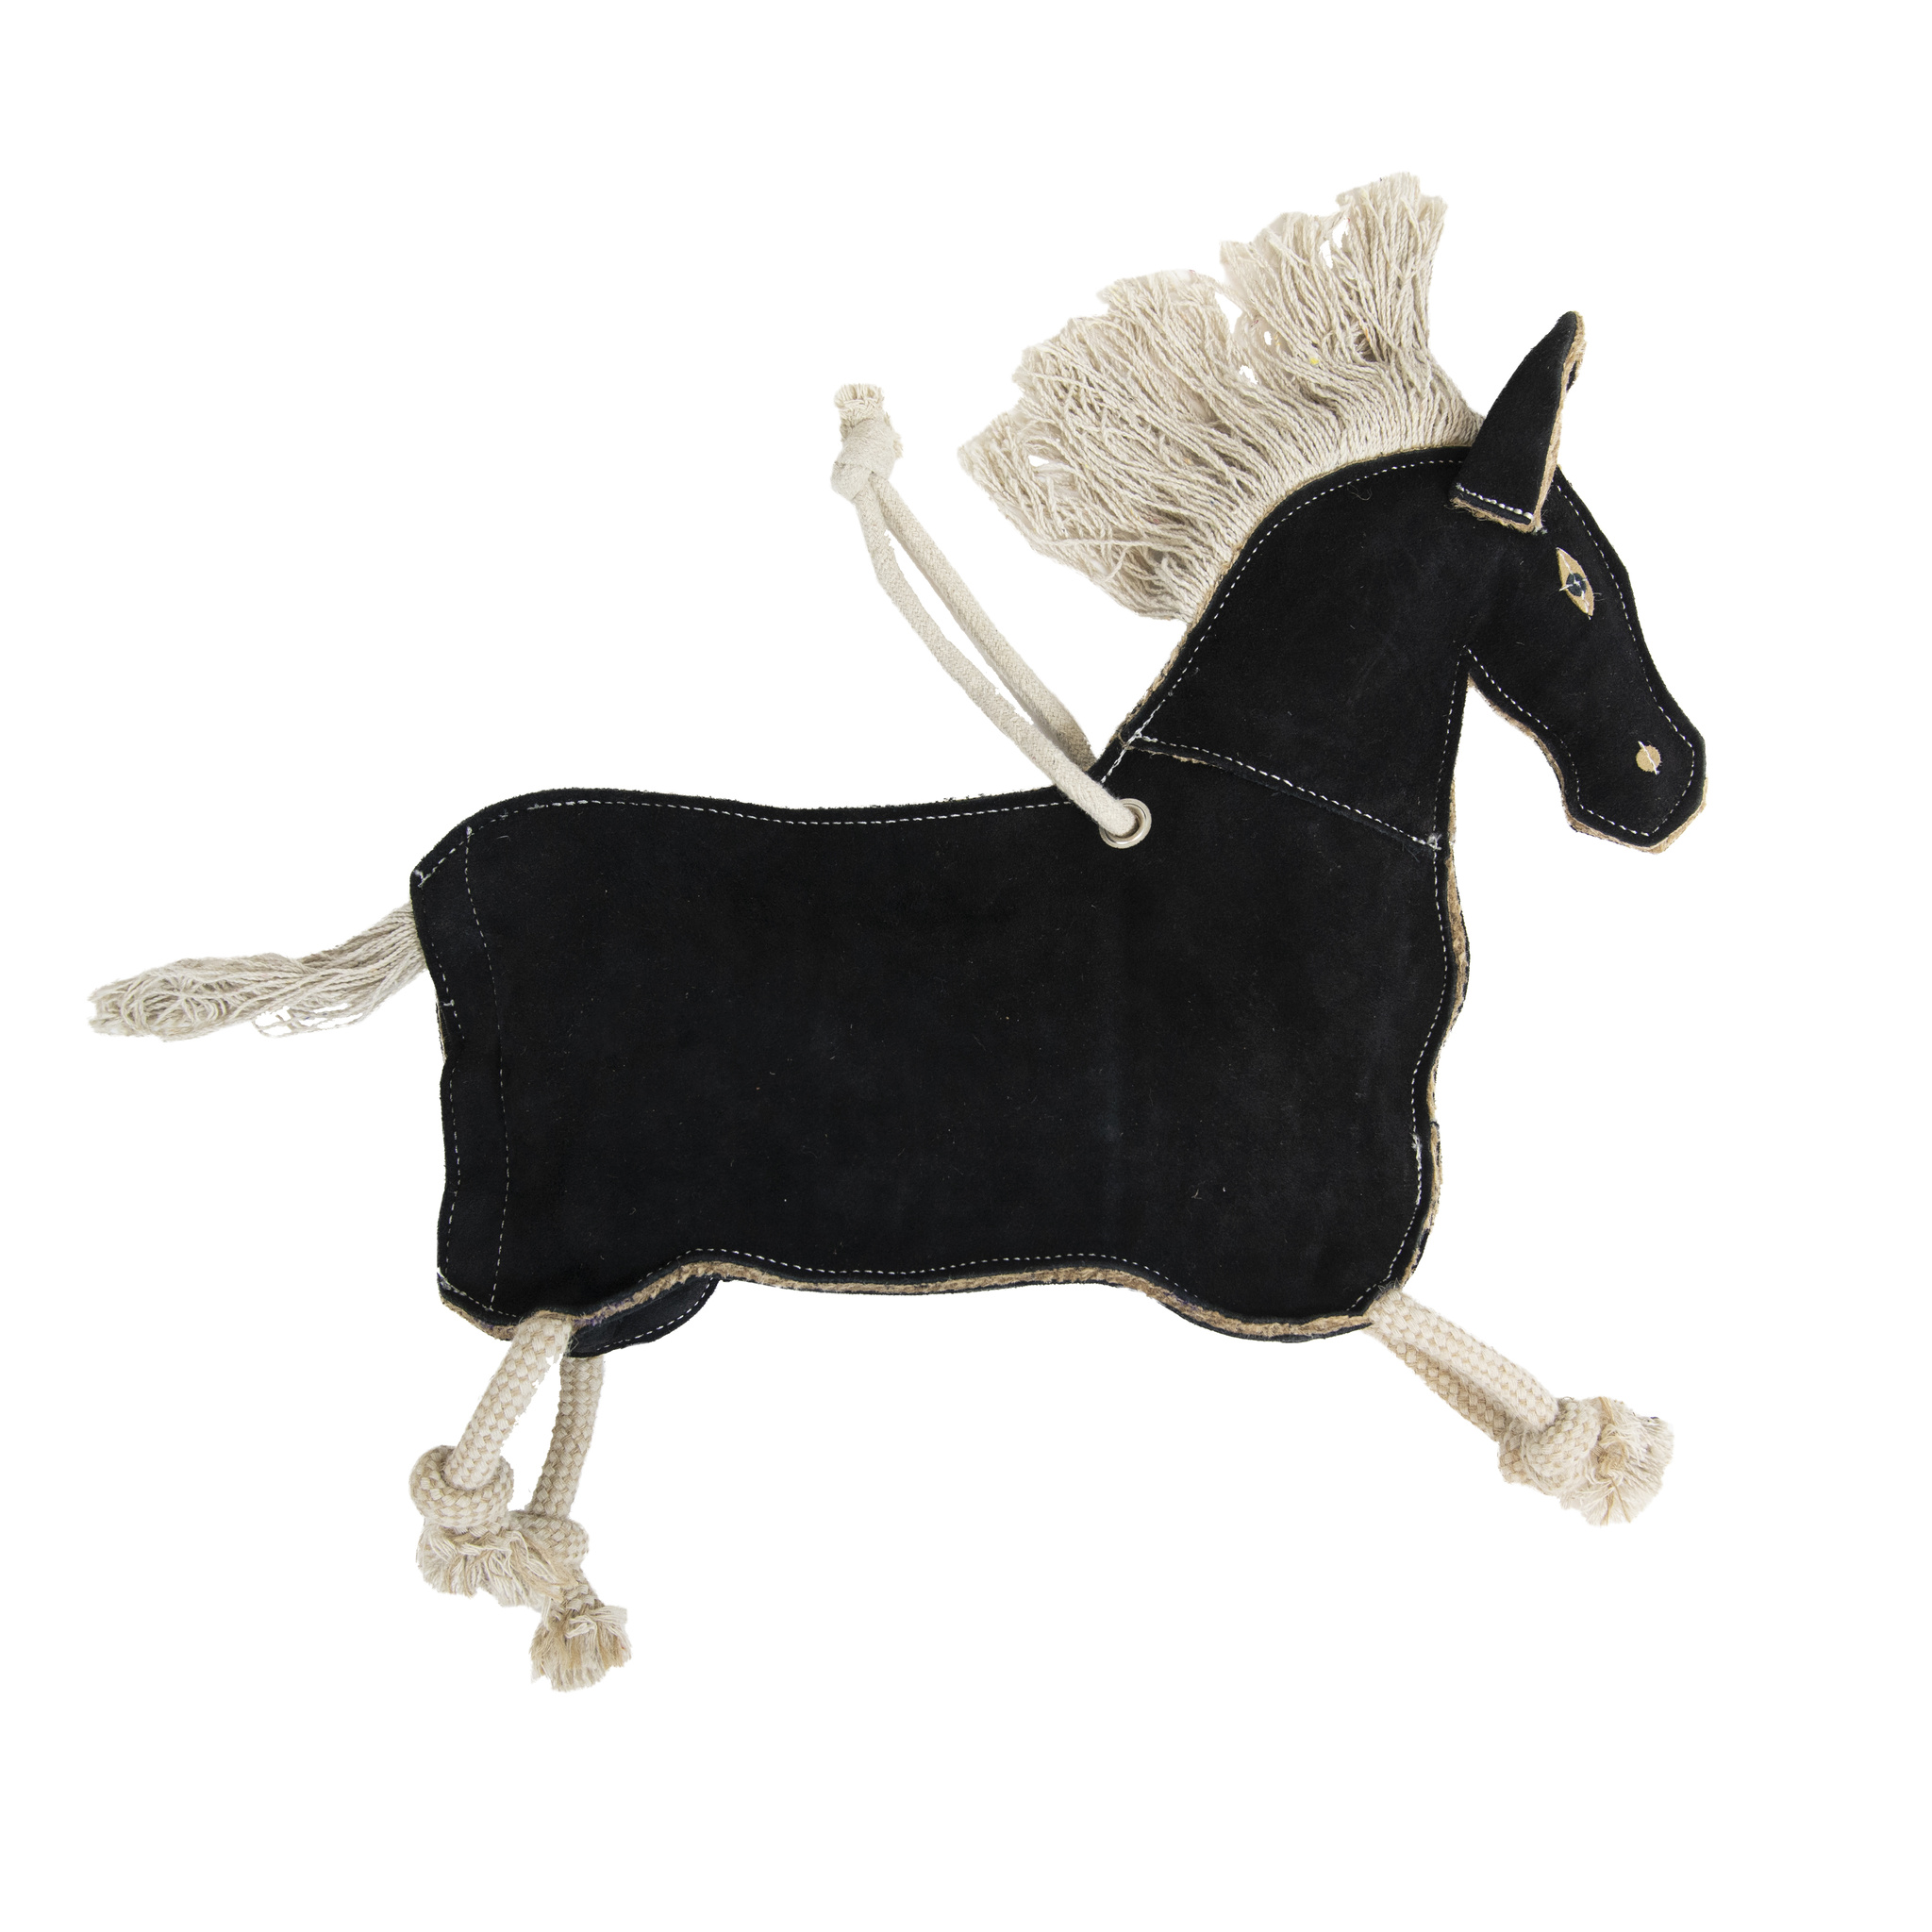 KENTUCKY Pferdespielzeug Relax Horse Toy Pony - braun - Stck. - 1